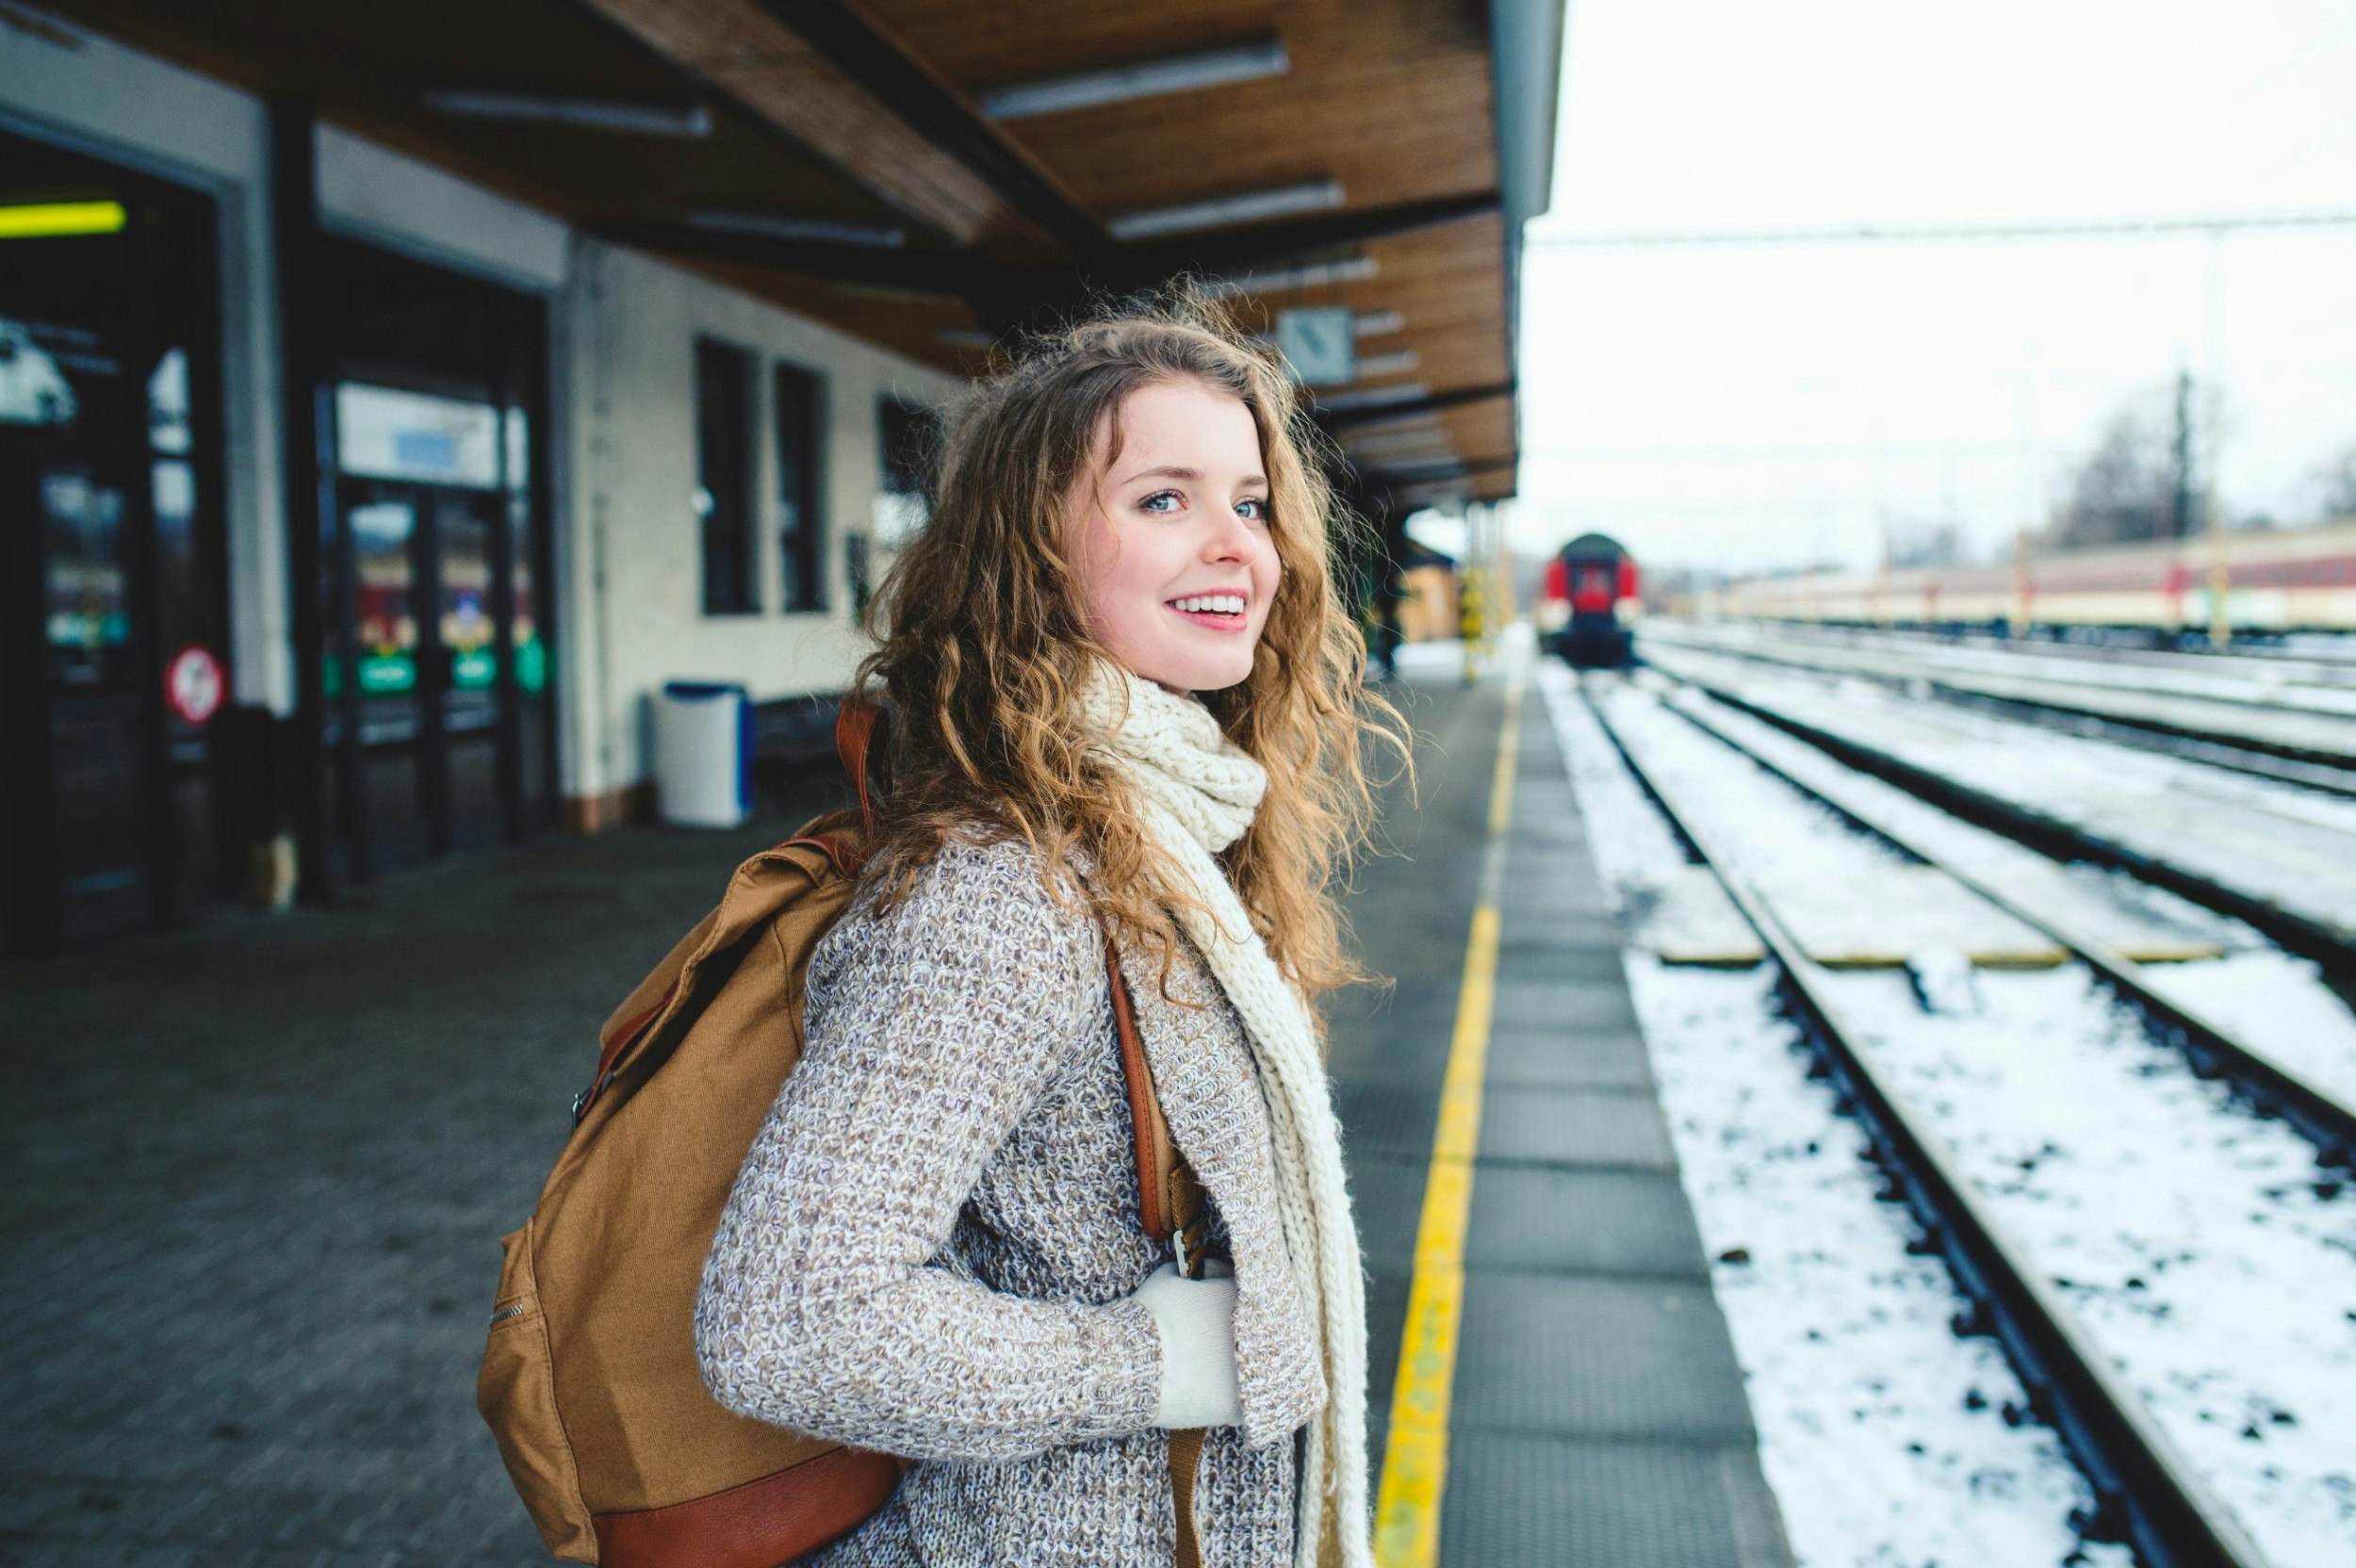 Smiling teenage girl on station platform